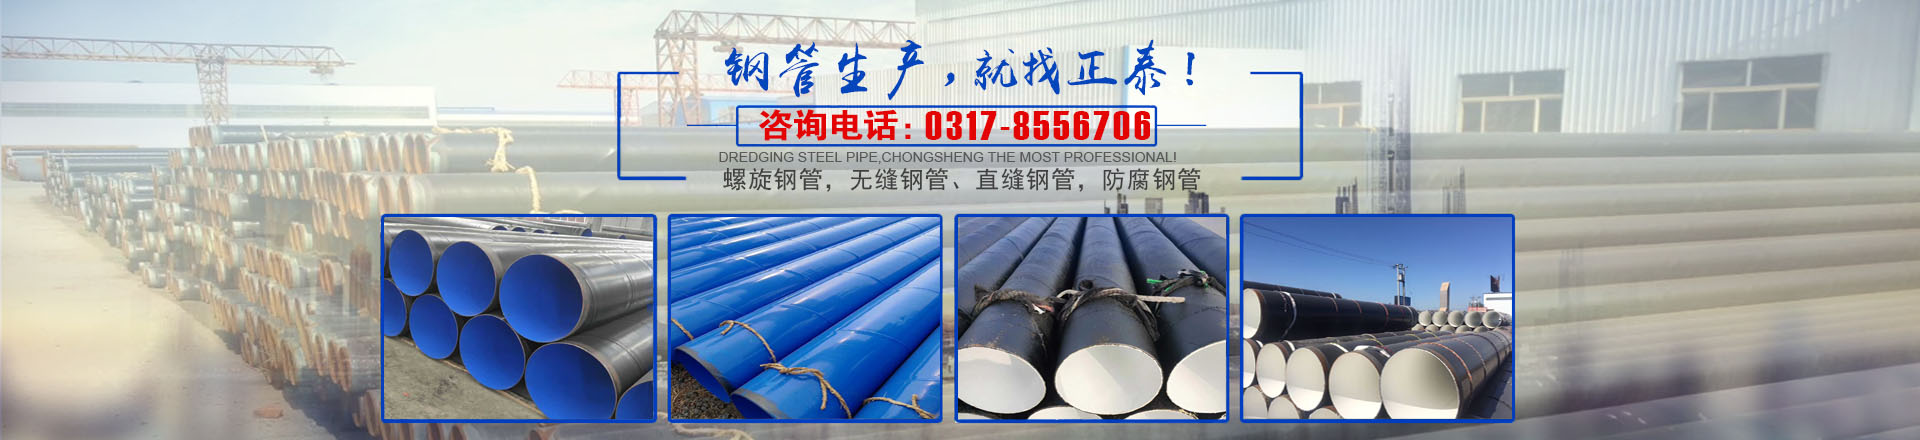 滄州市正泰鋼管有限公司